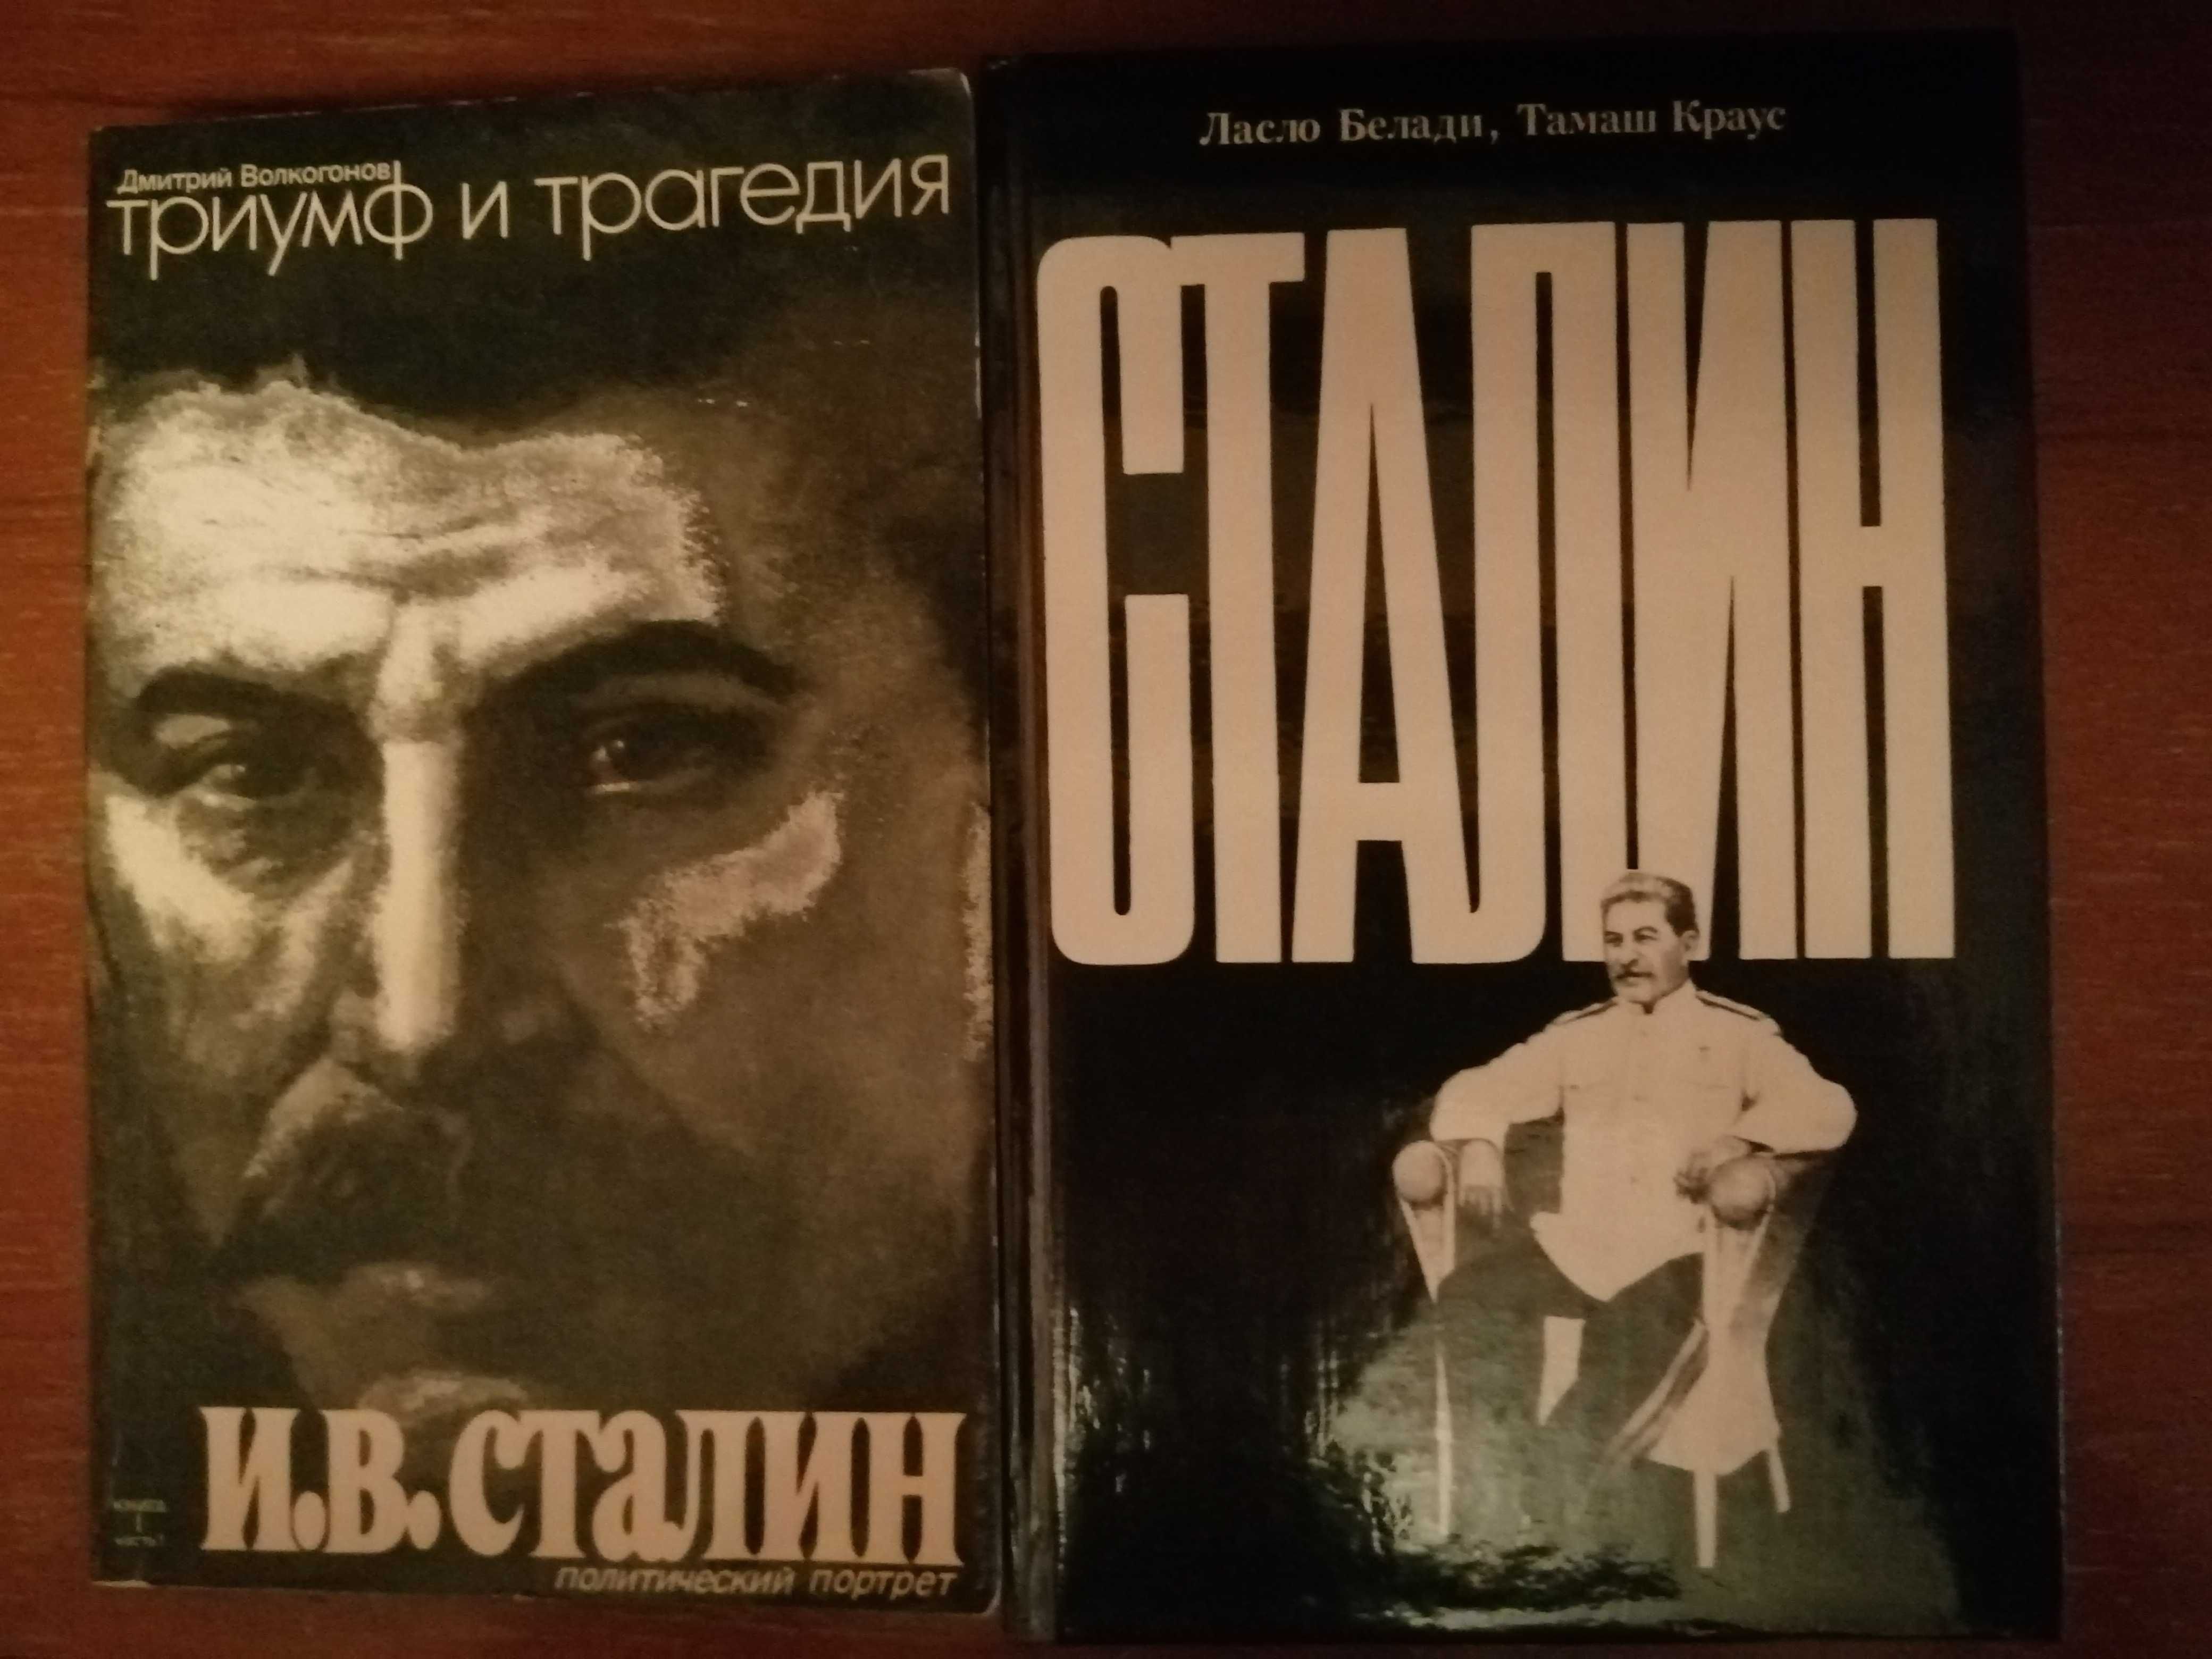 Д.Волкогонов  "Триумф и трагедия. И.В. Сталин"